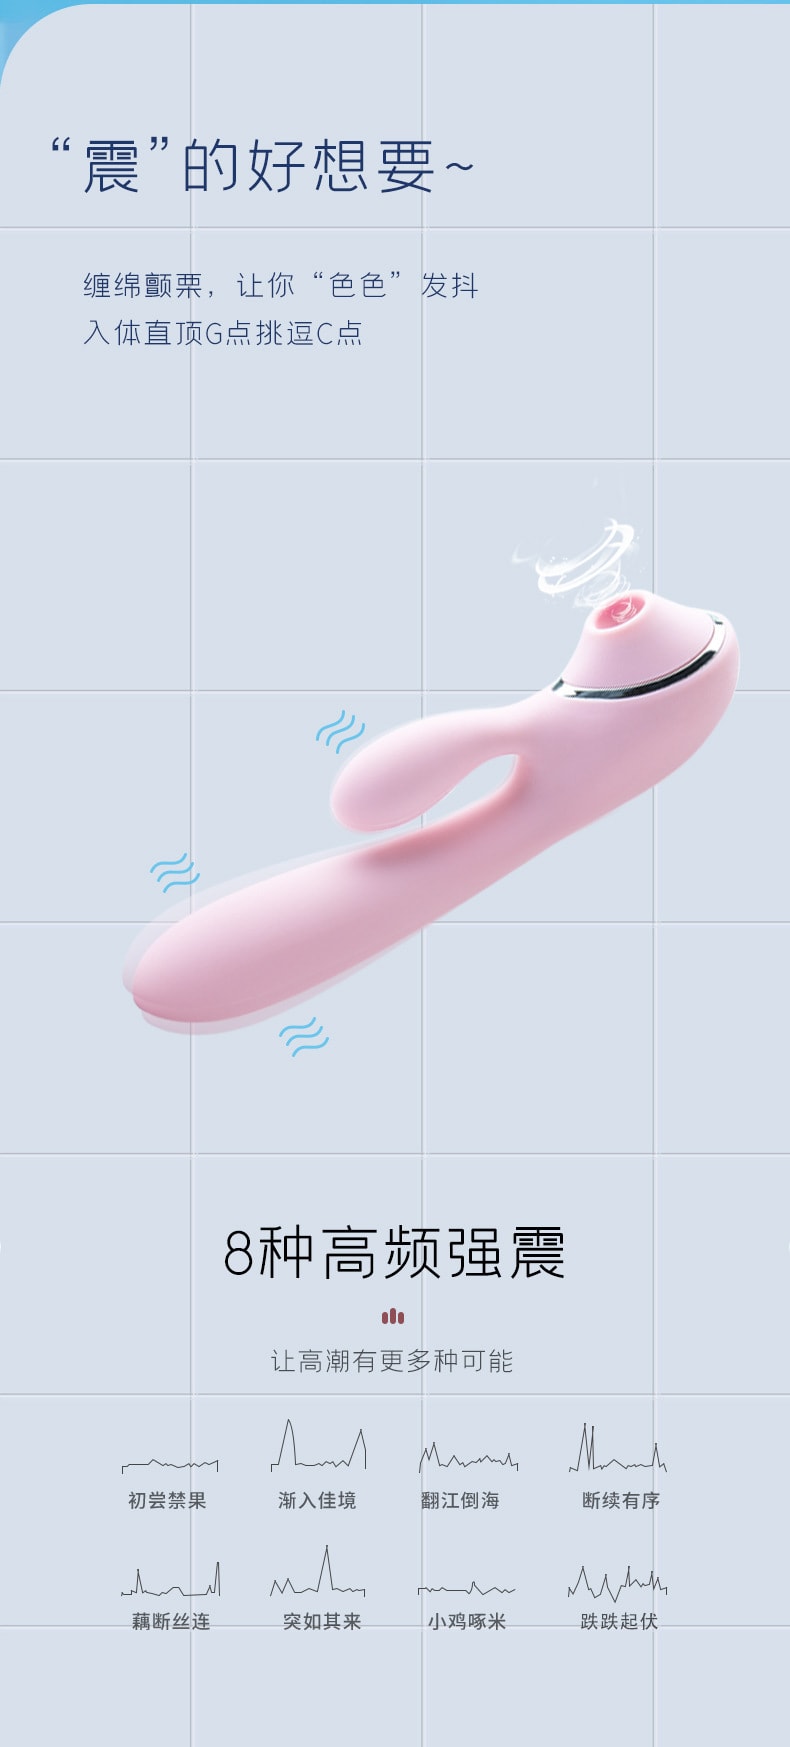 【中國直郵】 新款吸吸女用 私潮按摩棒 成人情趣用品 粉紅色